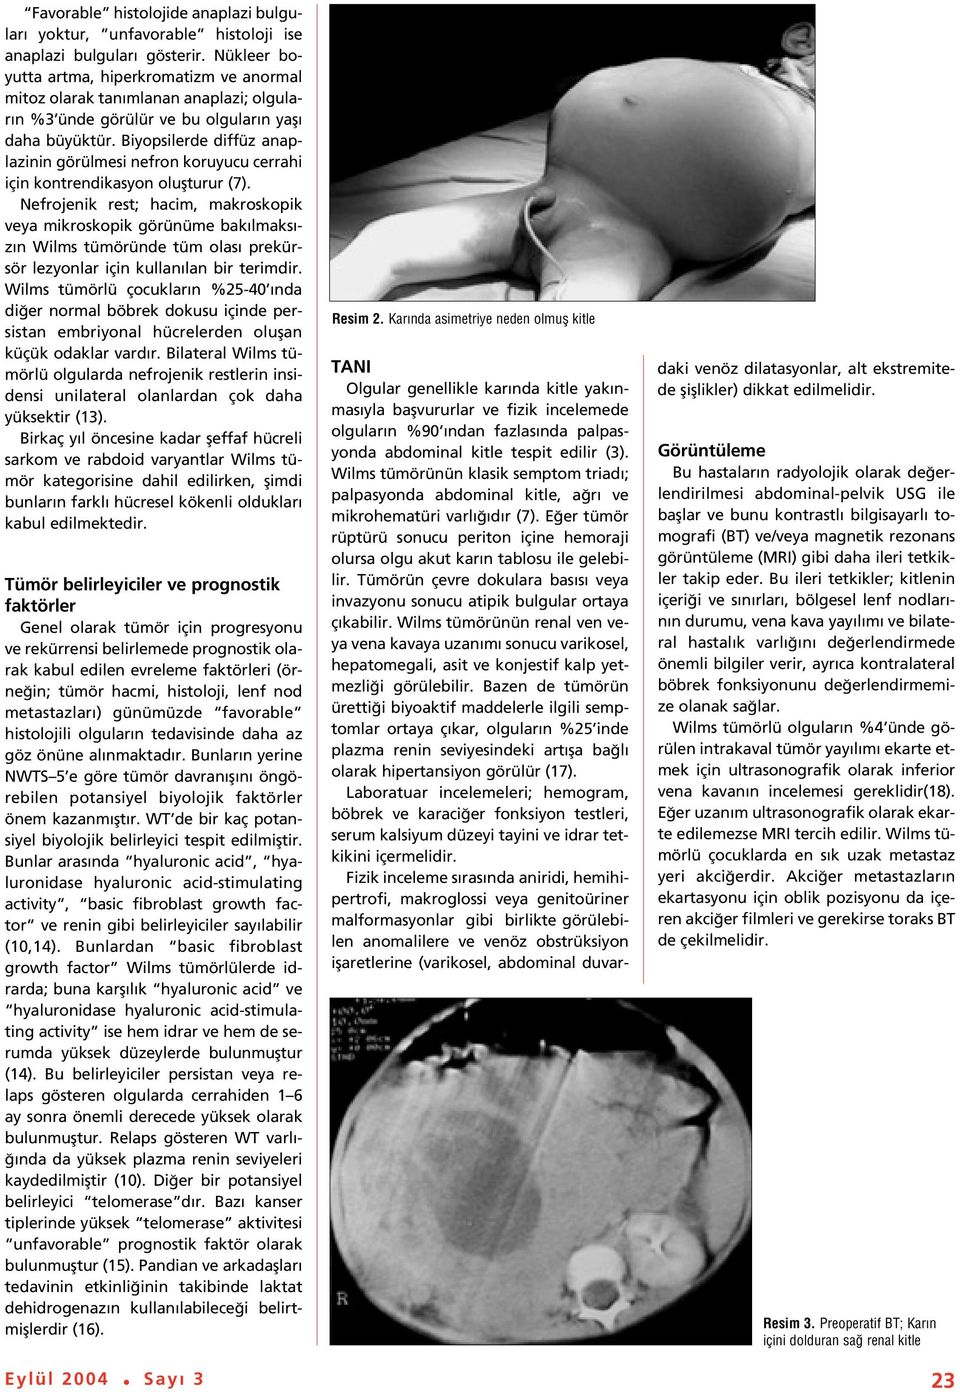 Biyopsilerde diffüz anaplazinin görülmesi nefron koruyucu cerrahi için kontrendikasyon oluflturur (7).